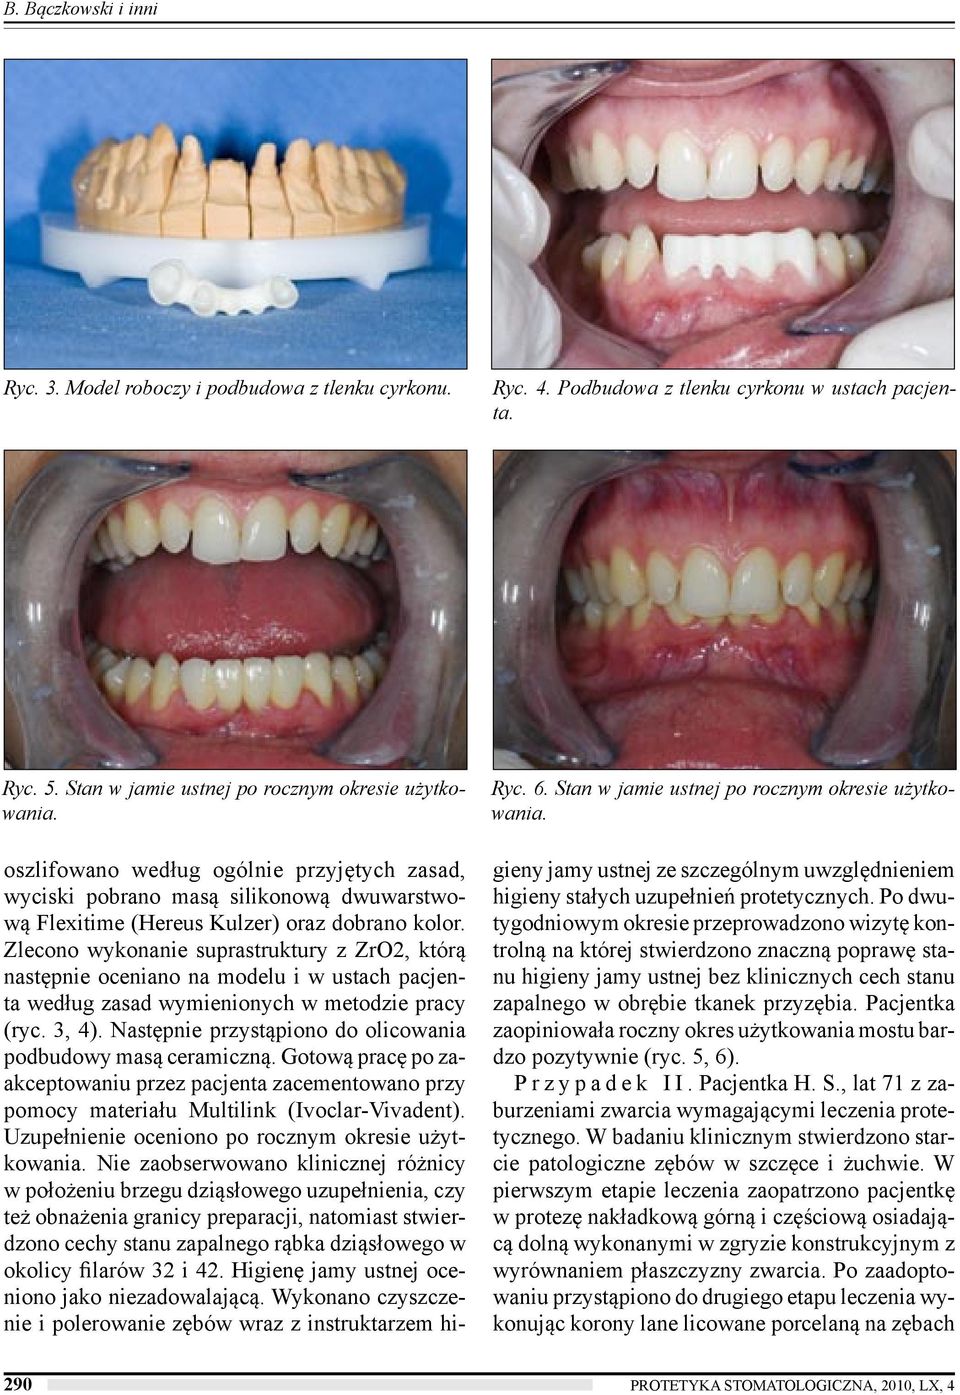 Zlecono wykonanie suprastruktury z ZrO2, którą następnie oceniano na modelu i w ustach pacjenta według zasad wymienionych w metodzie pracy (ryc. 3, 4).